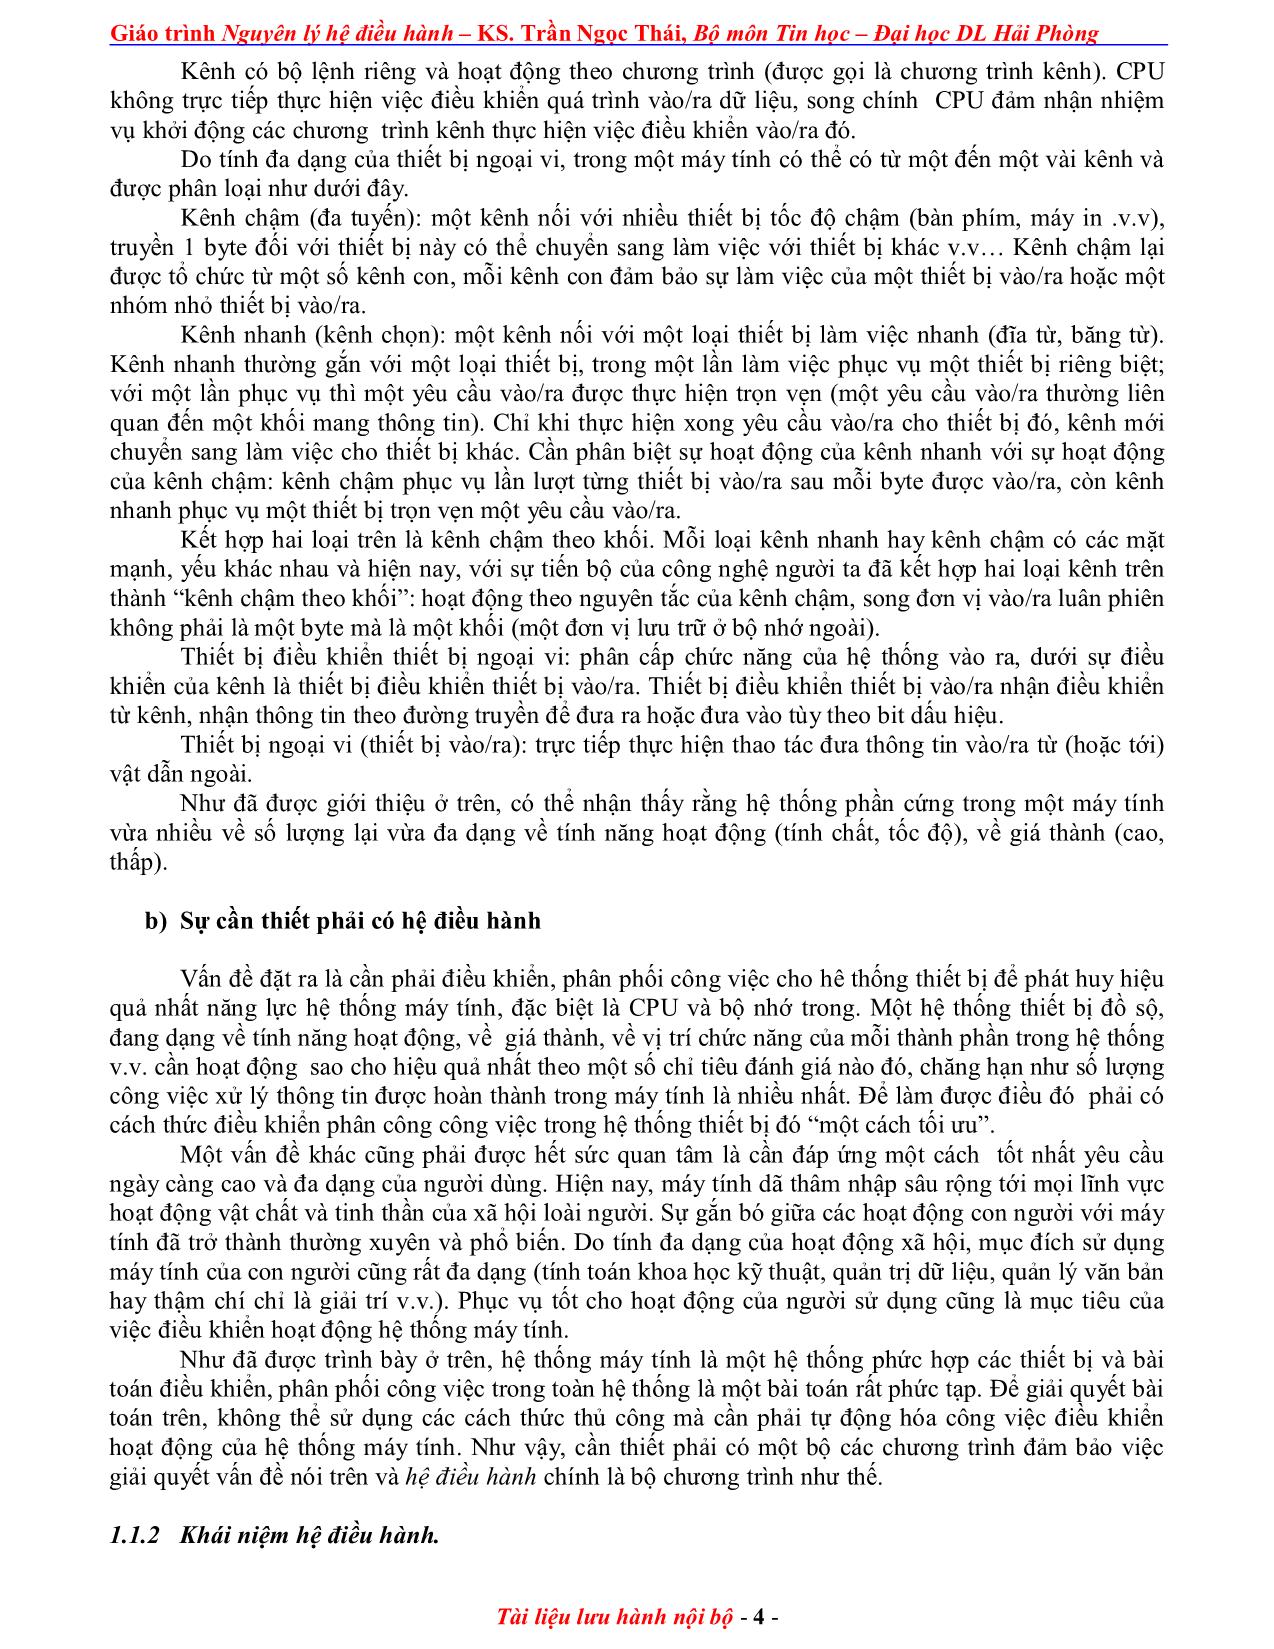 Giáo trình Nguyên lý điều hành (Phần 1) trang 4